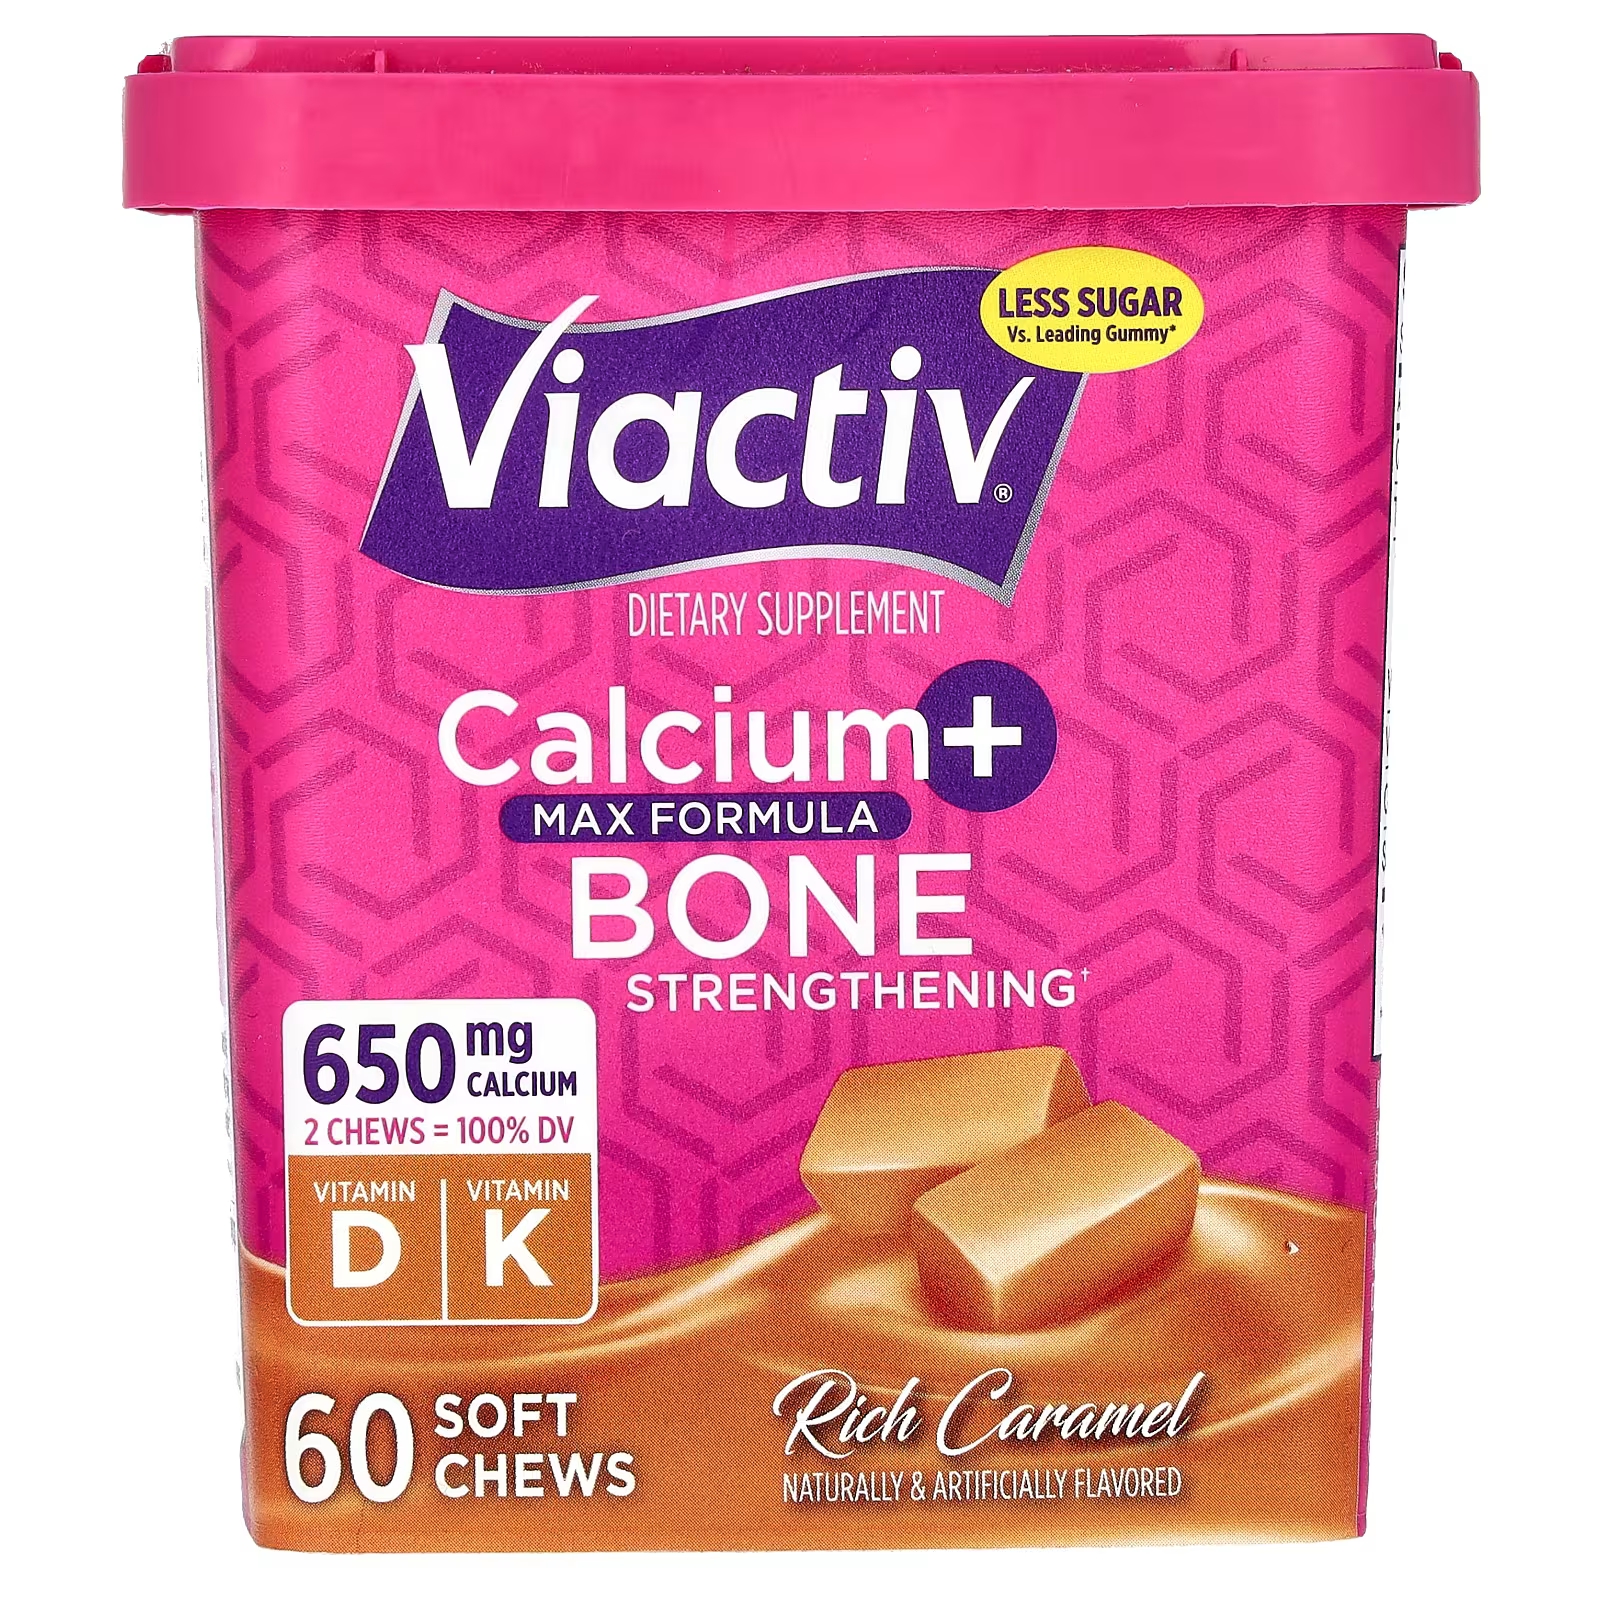 Кальций Viactiv + укрепление костей Max Formula Rich Caramel, 60 мягких жевательных таблеток цена и фото